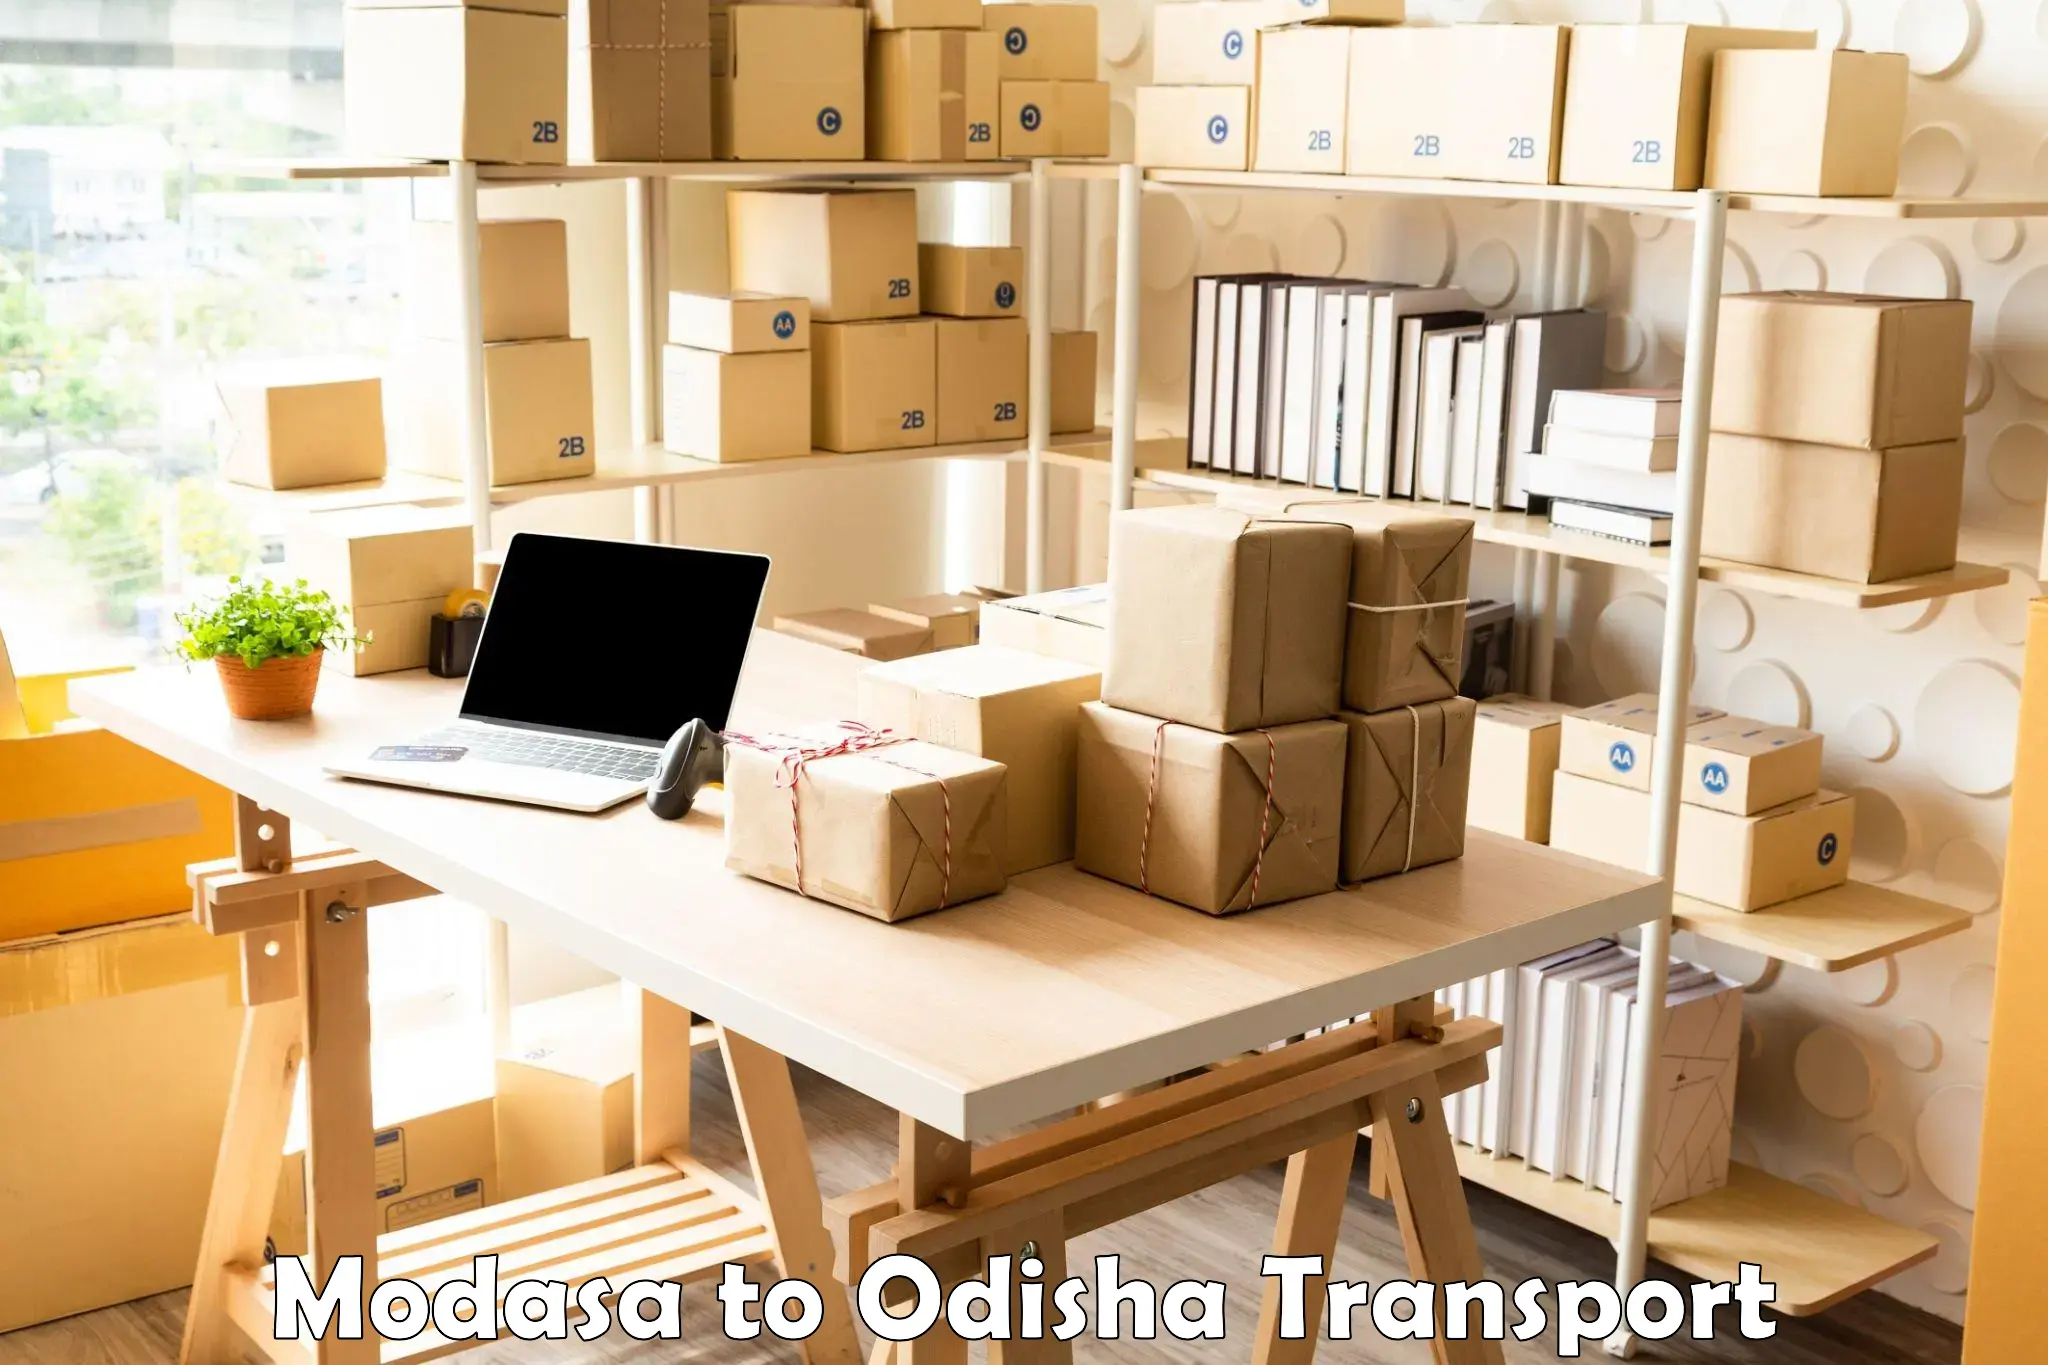 Cargo transport services Modasa to Sohela